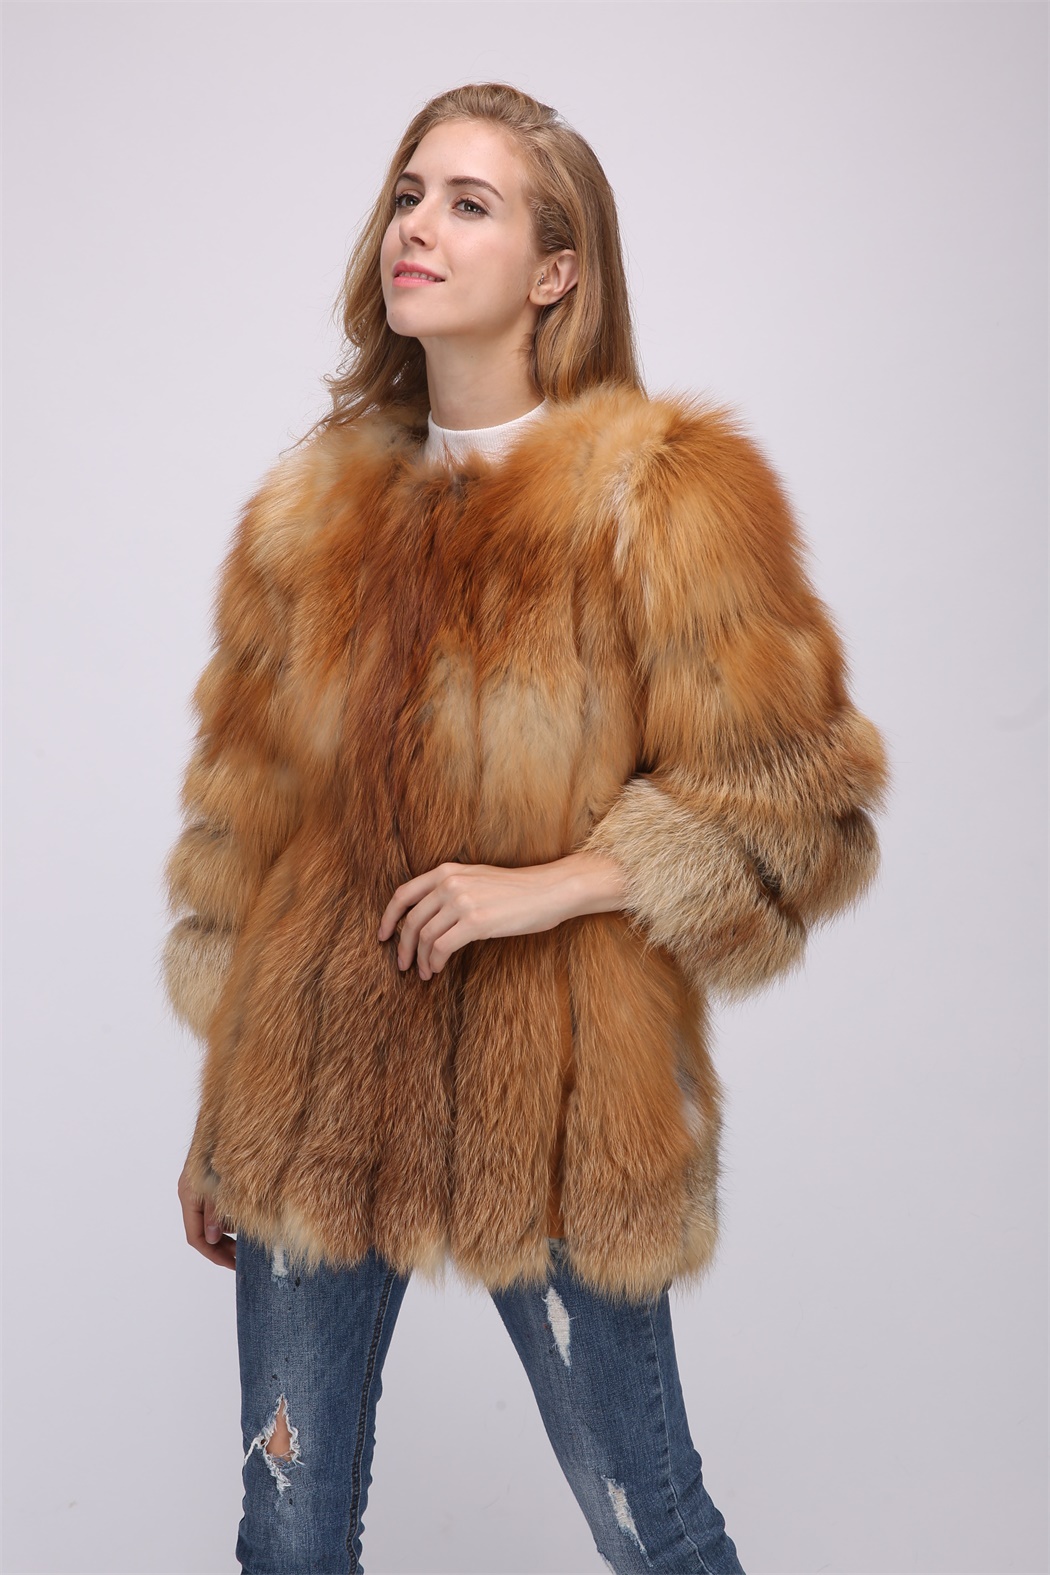 red fox fur coat 1708163 – Lvcomeff